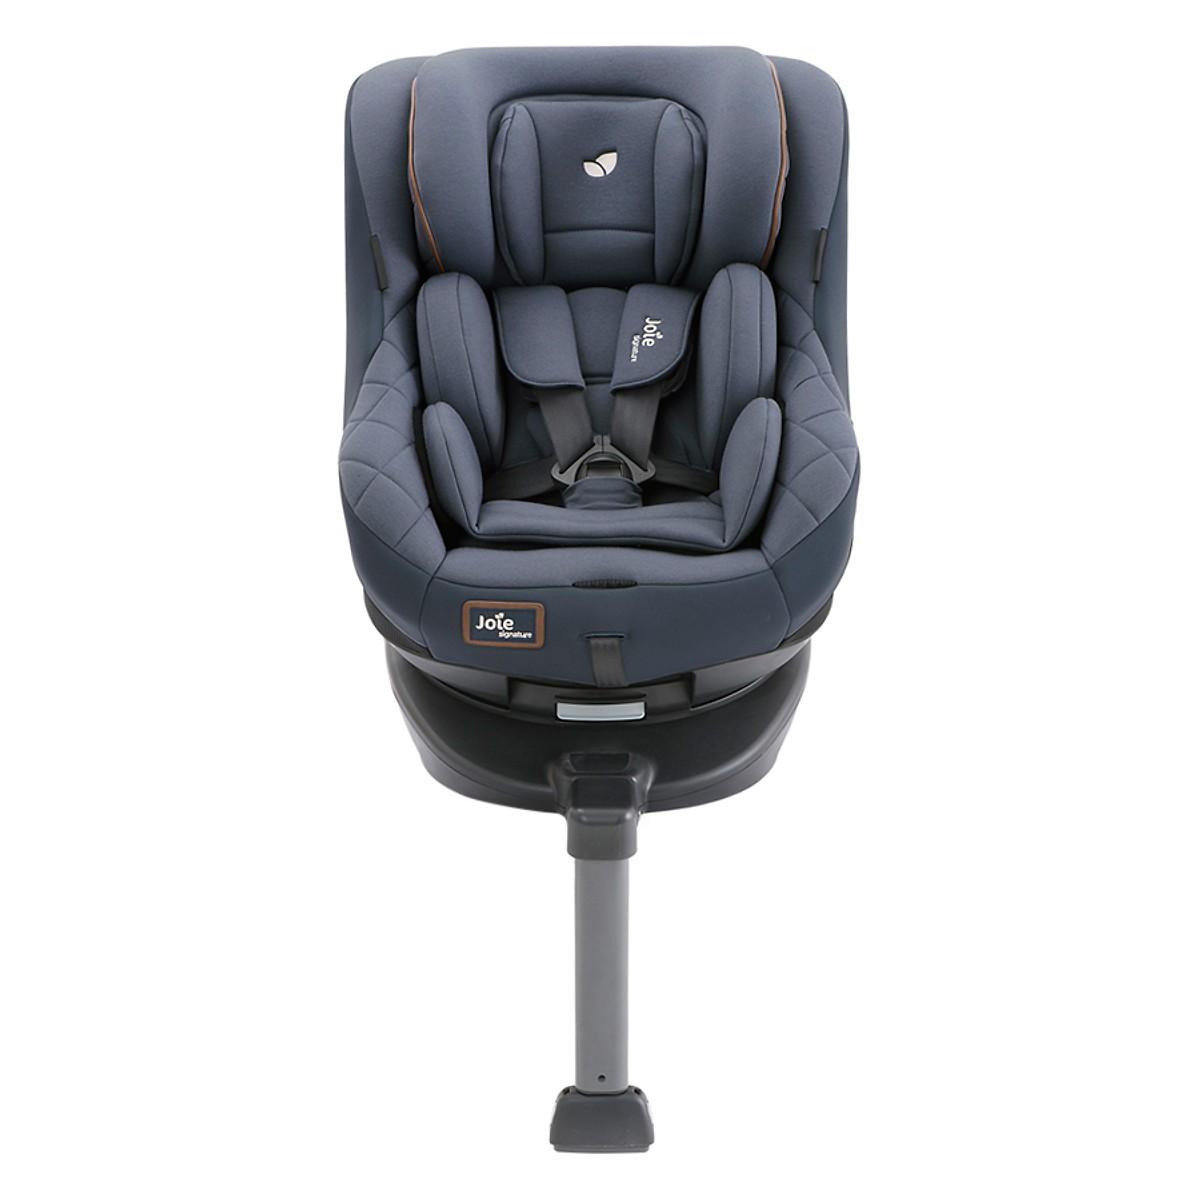 HCMGhế Ngồi Ô Tô Trẻ Em Joie Spin 360 W SUMMER SEAT SIG. Granit Bleu